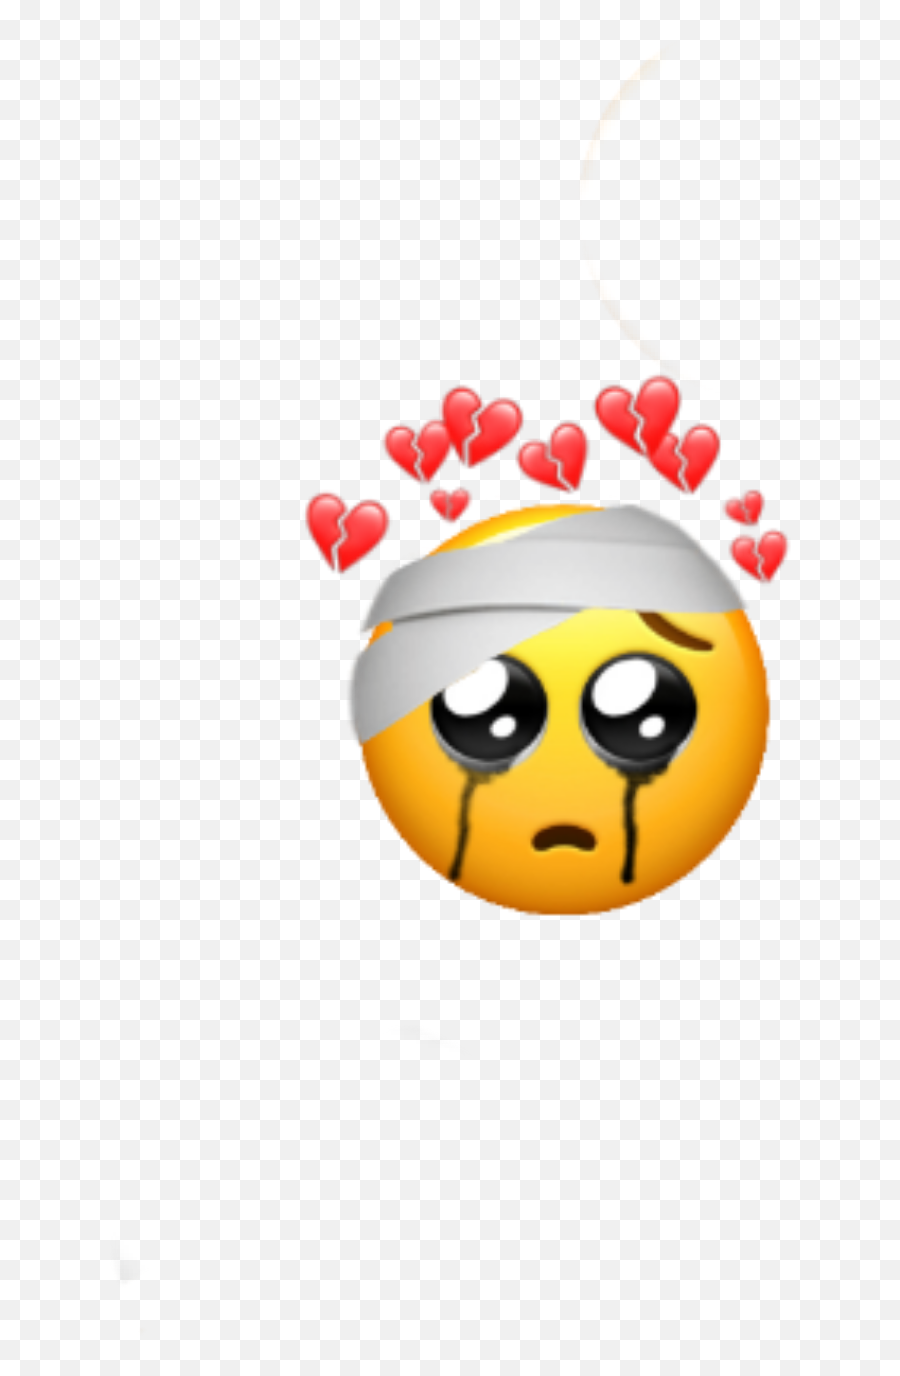 The Most Edited - Happy Emoji,Meep Emoticon 005